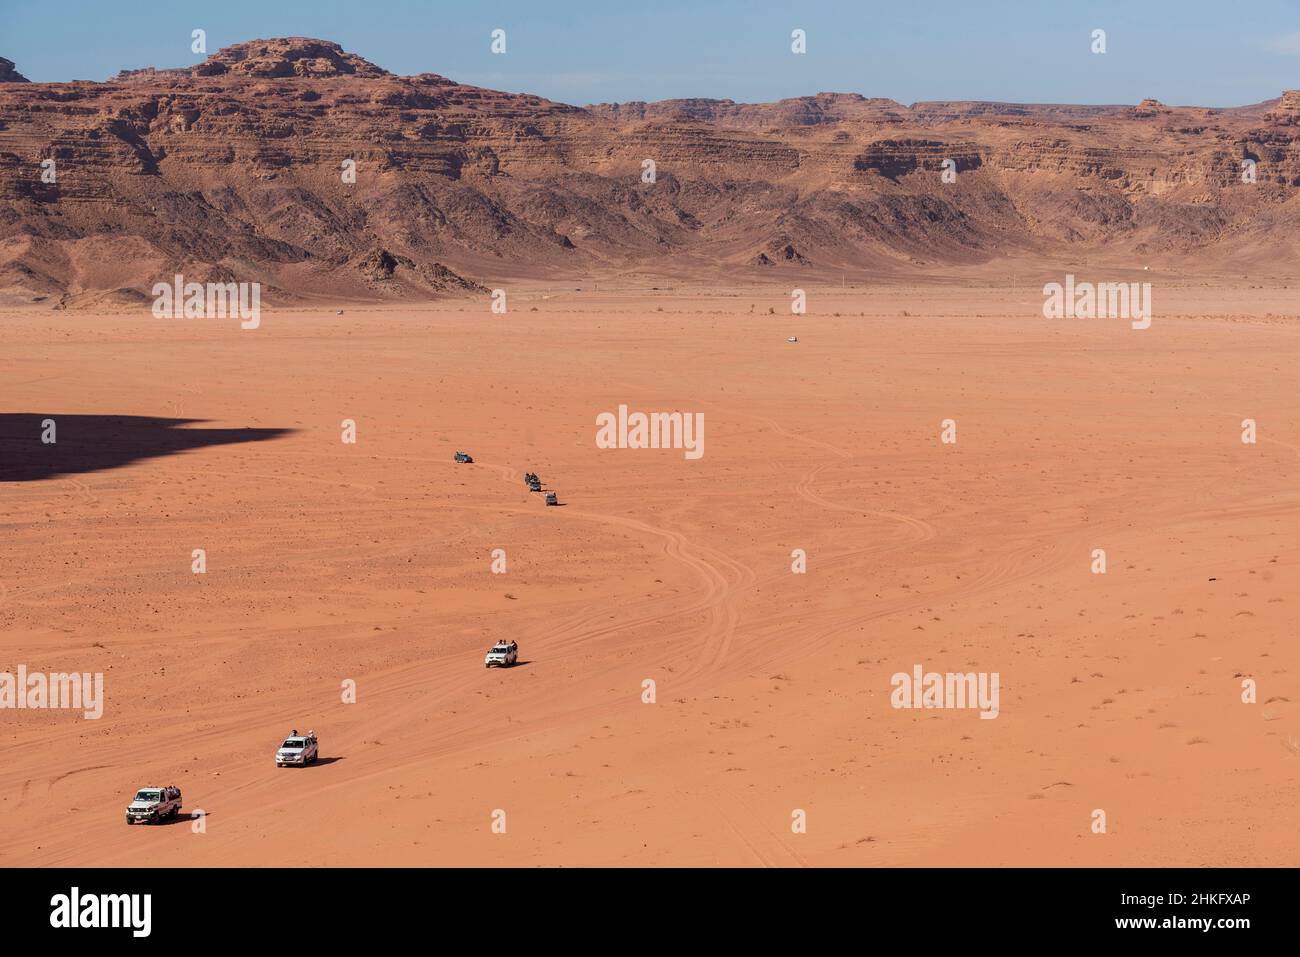 Jordanien, Aqaba Governorate, Wadi Rum, von der UNESCO zum Weltkulturerbe erklärt, Wüstenfahrzeuge mit Allradantrieb Stockfoto